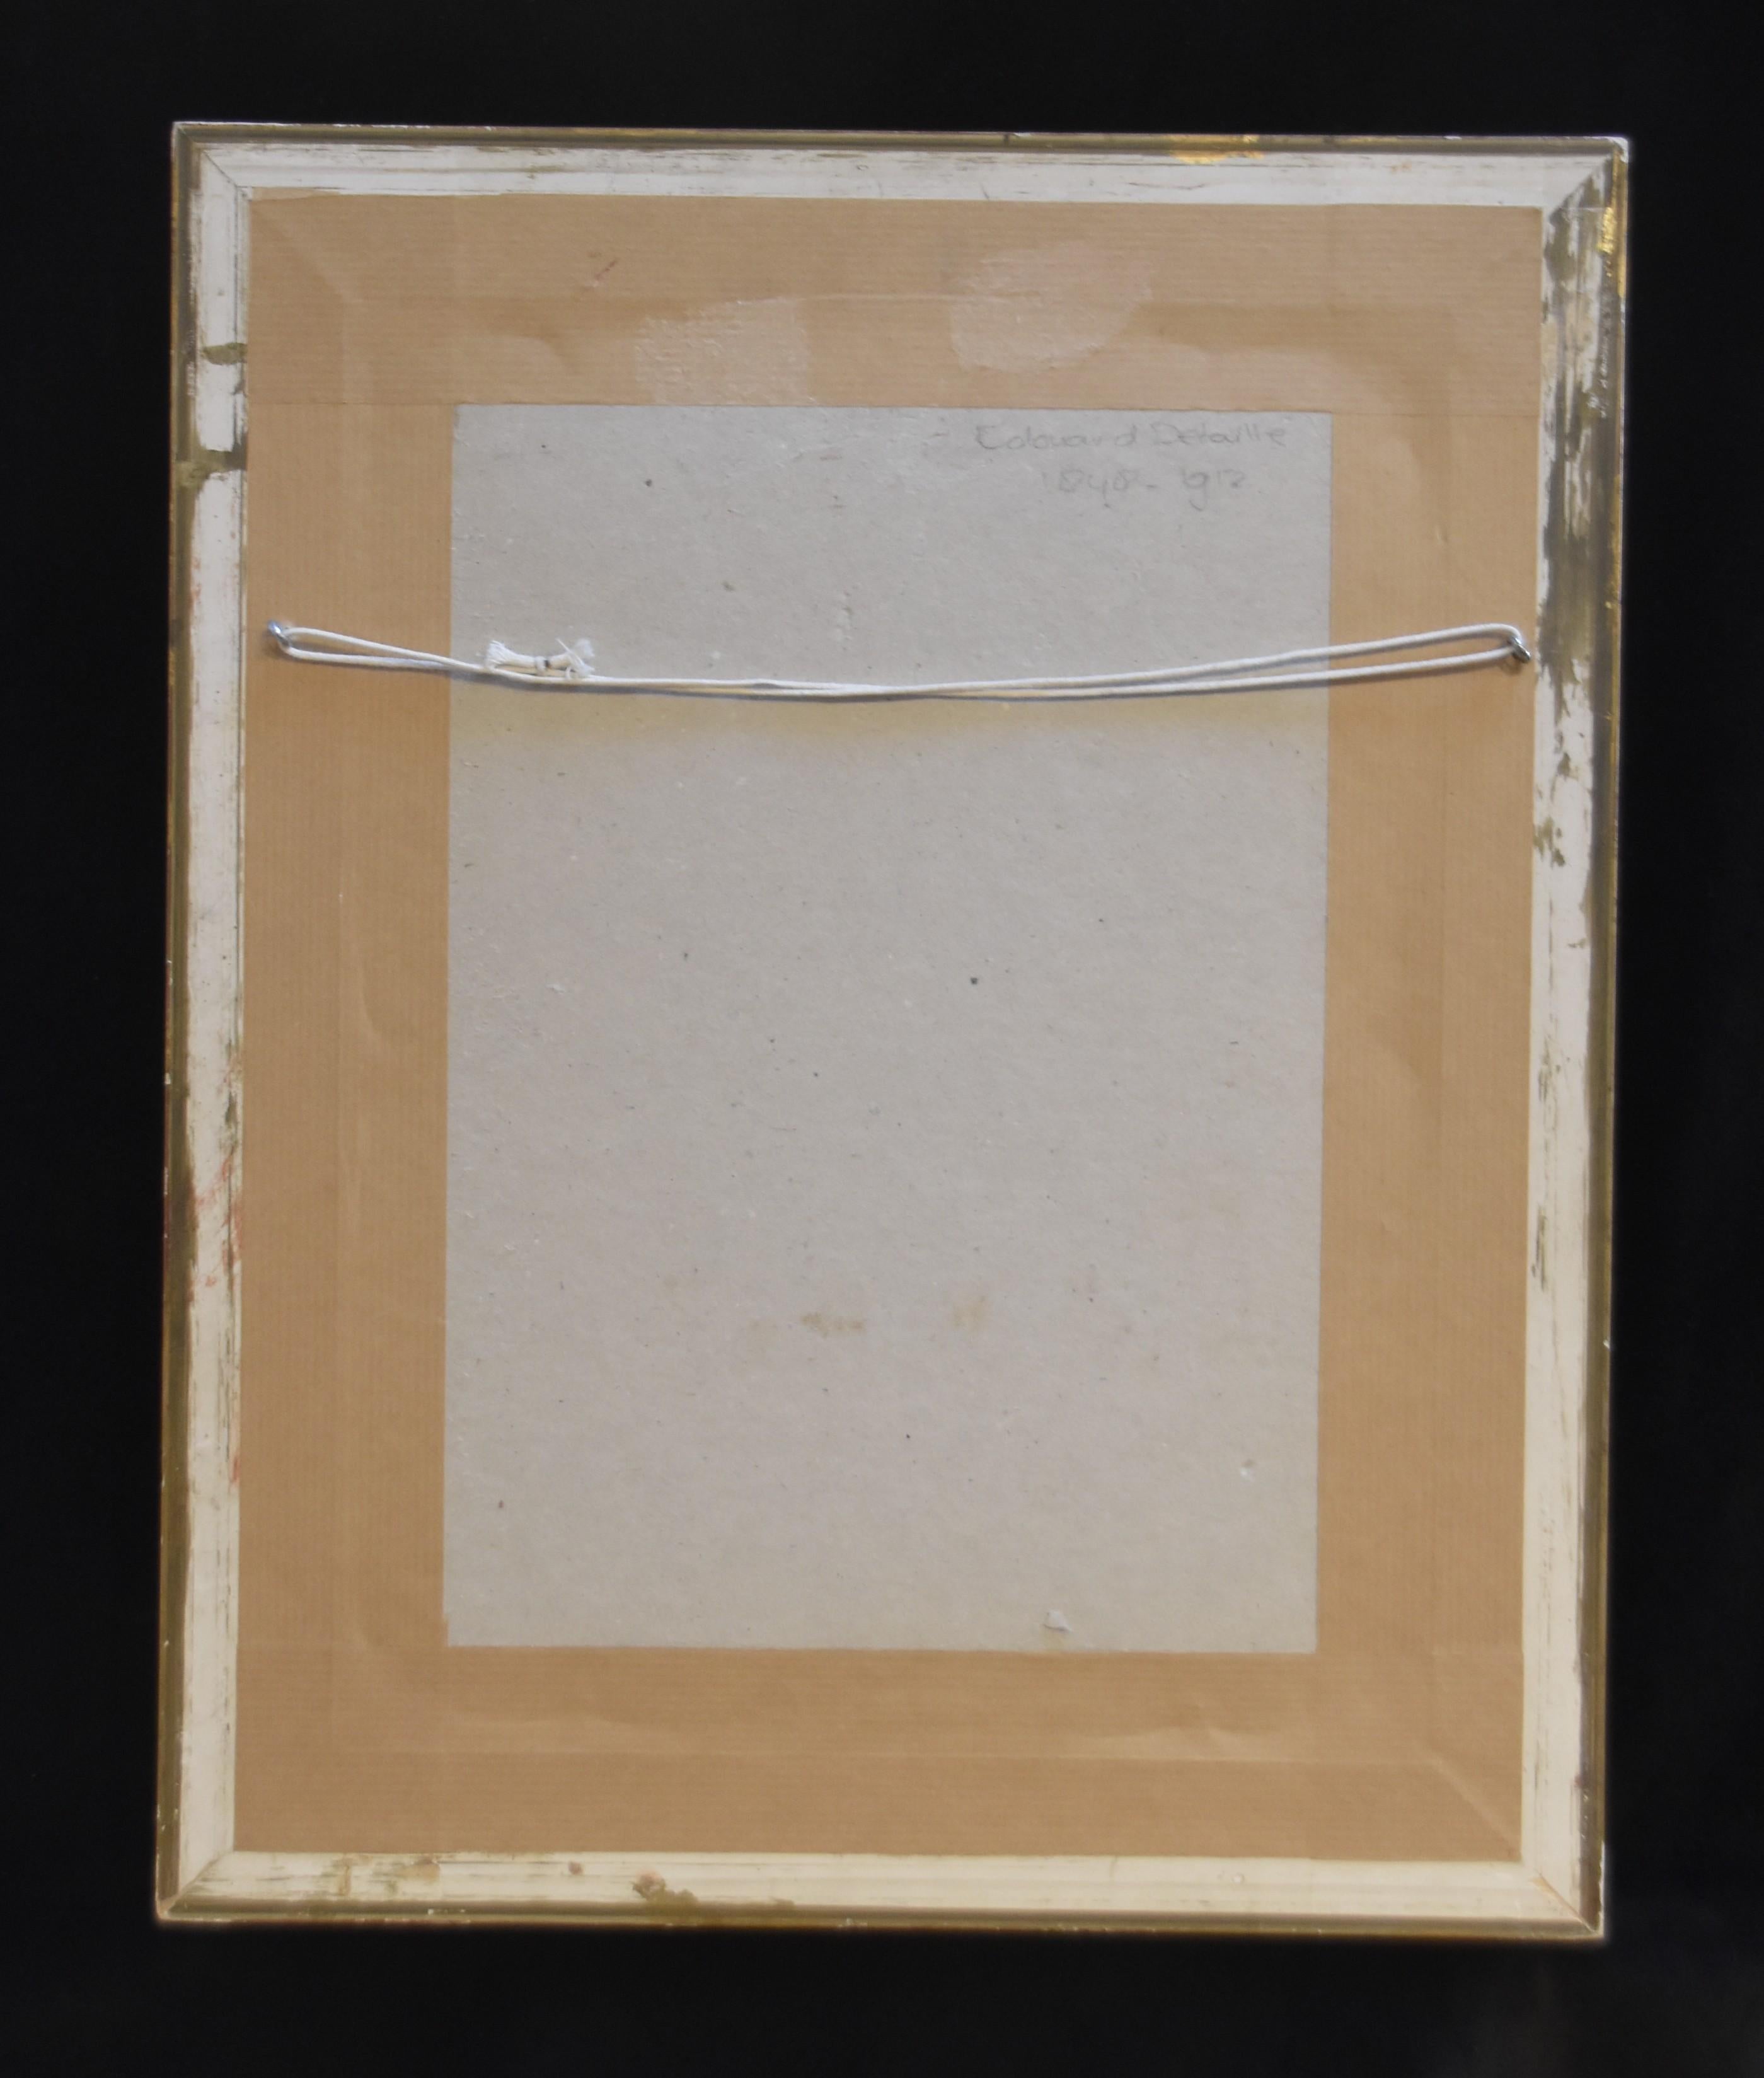 Edouard Detaille (1848-1912)
Études sur les gardes à cheval
14 x 8,5 cm 
Plume et encre sur papier
Porte le monogramme ED en bas à gauche
Période de référence : 42  x 33.5  cm (manque dans la dorure)
En bon état : peut-être légèrement jauni par le